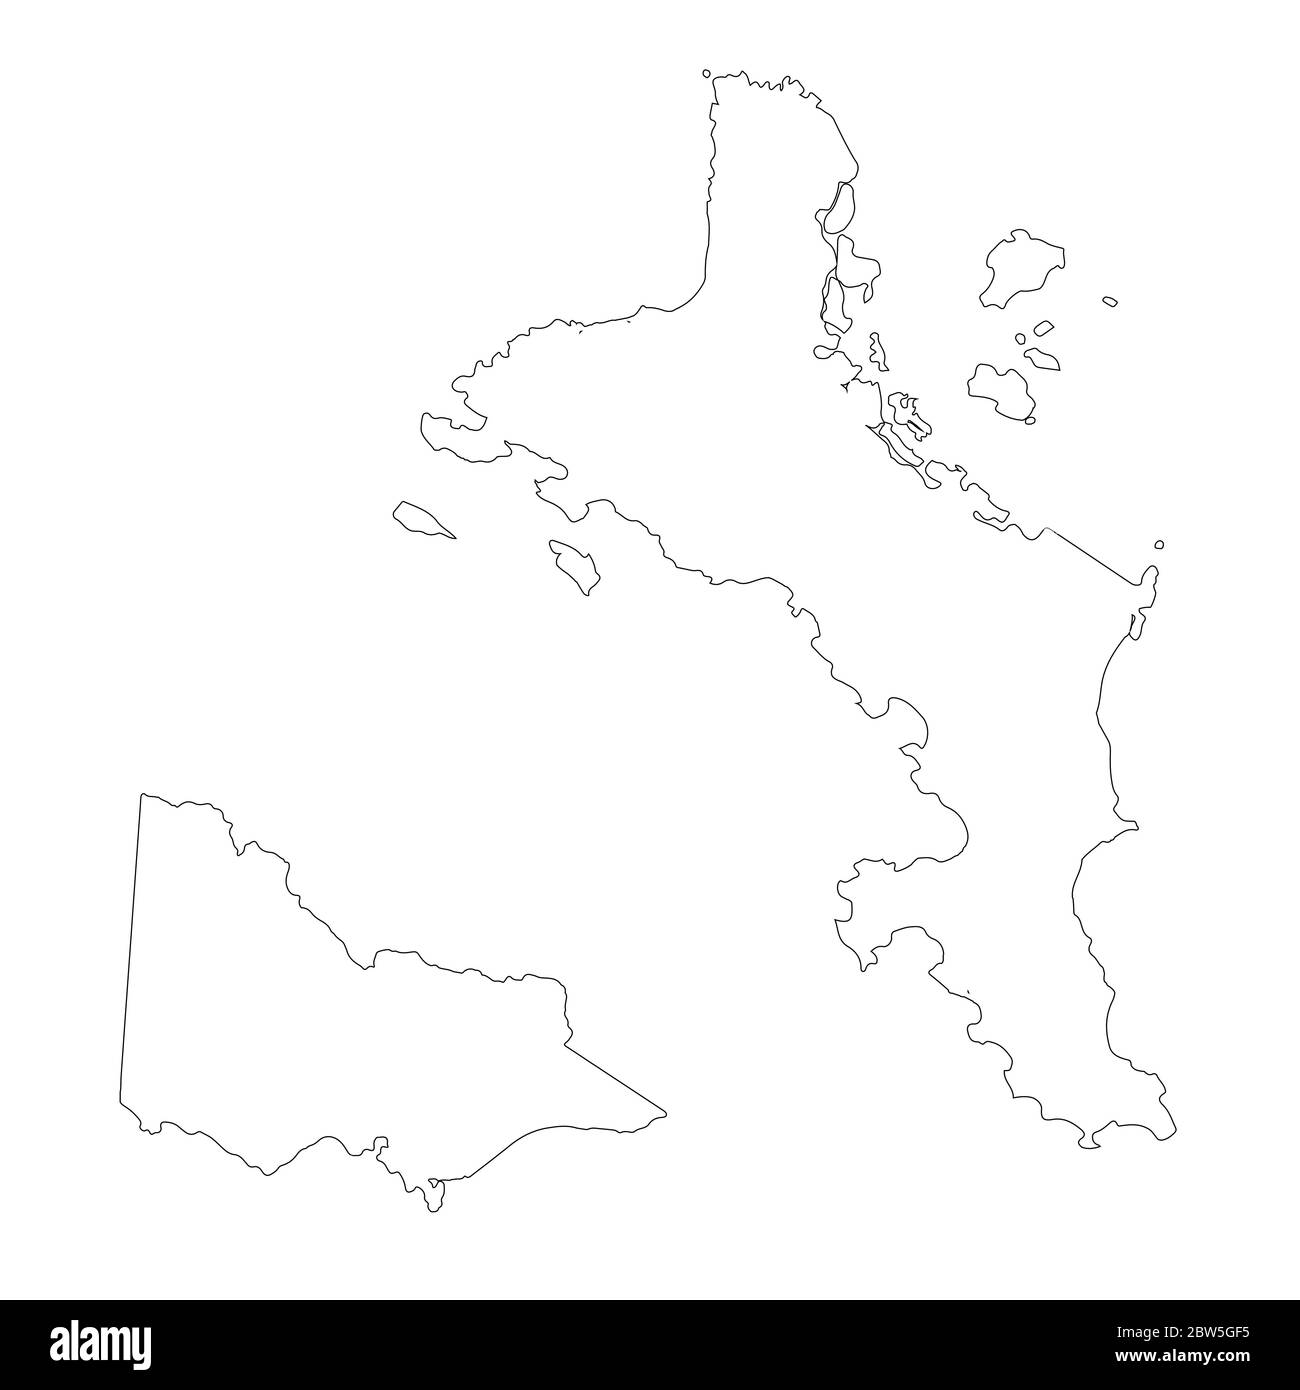 Vektorkarte Seychellen und Victoria. Land und Hauptstadt. Isolierte Vektorgrafik. Übersicht. EPS 10-Abbildung. Stock Vektor